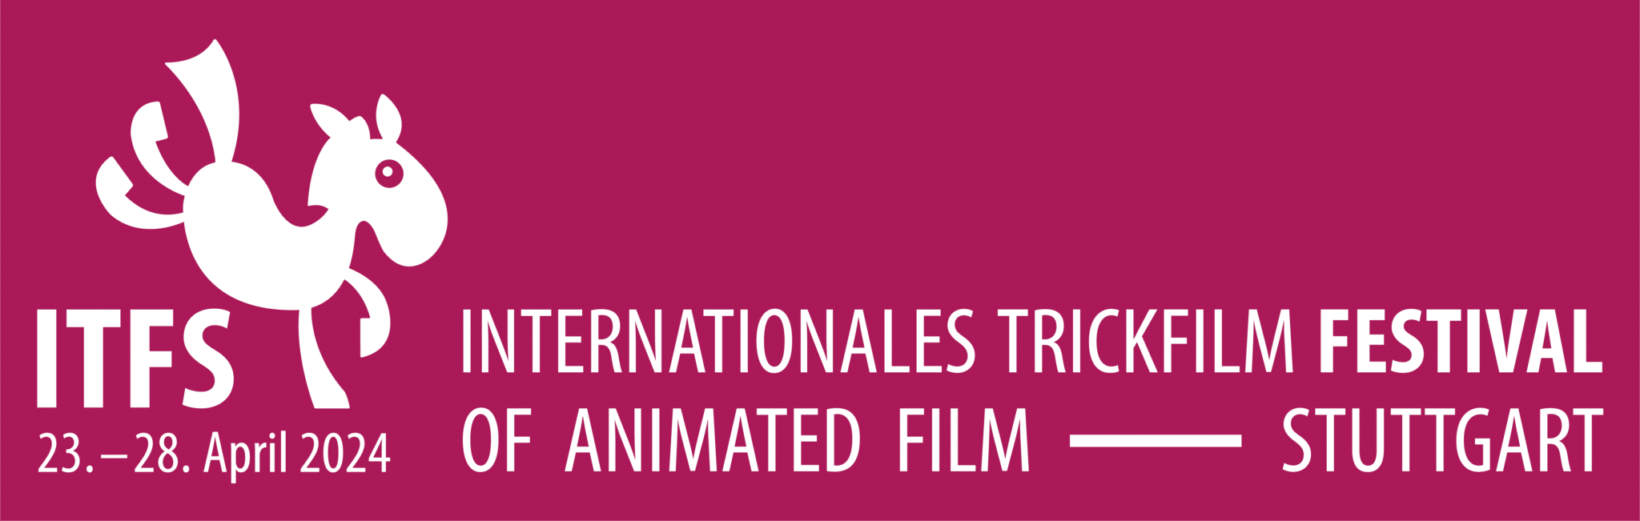 Logo des Internationalen Trickfilmfestivals mit animiertem springenden Pferd